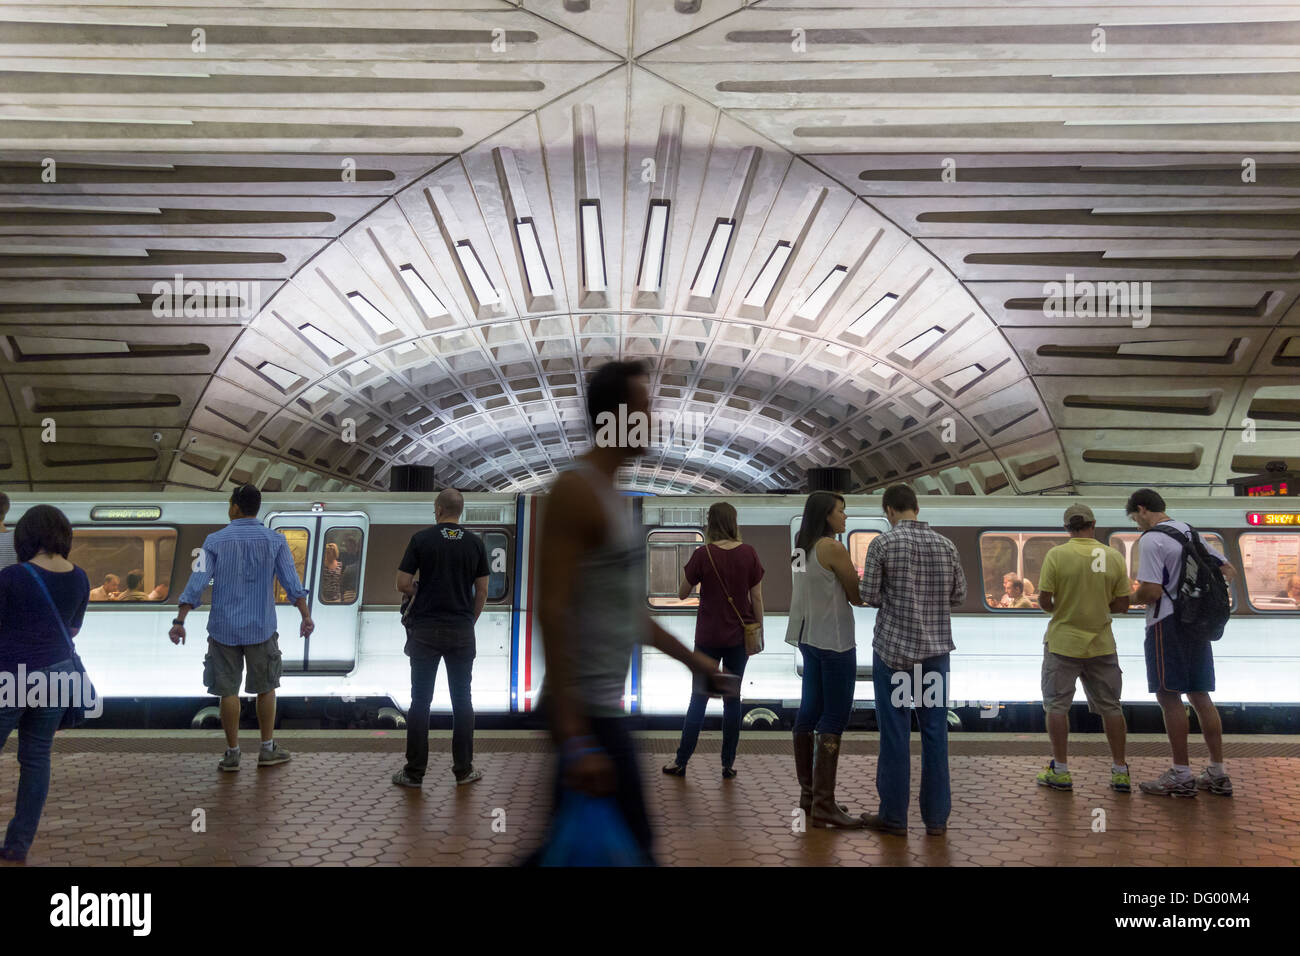 Il centro Metro Stazione della metropolitana di Washington DC. Persone, turisti, in attesa sulla piattaforma per i treni della metropolitana per arrivare. Foto Stock